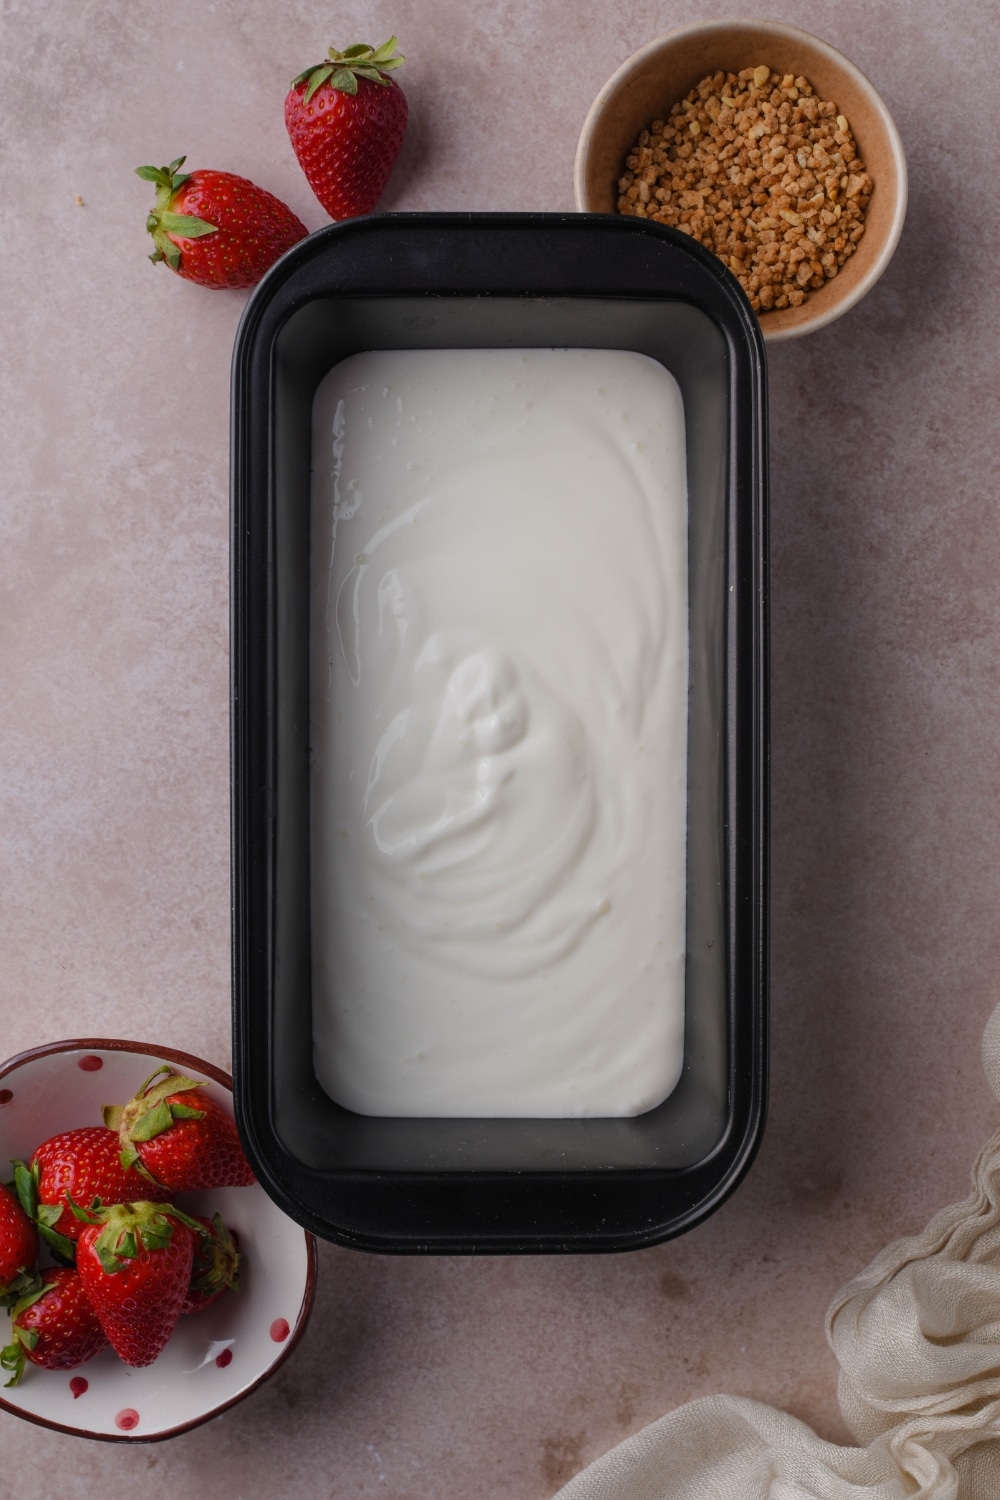 Yogurt mixture in a freezer-safe container next to bowls of ground hazelnut brittle and fresh strawberries.